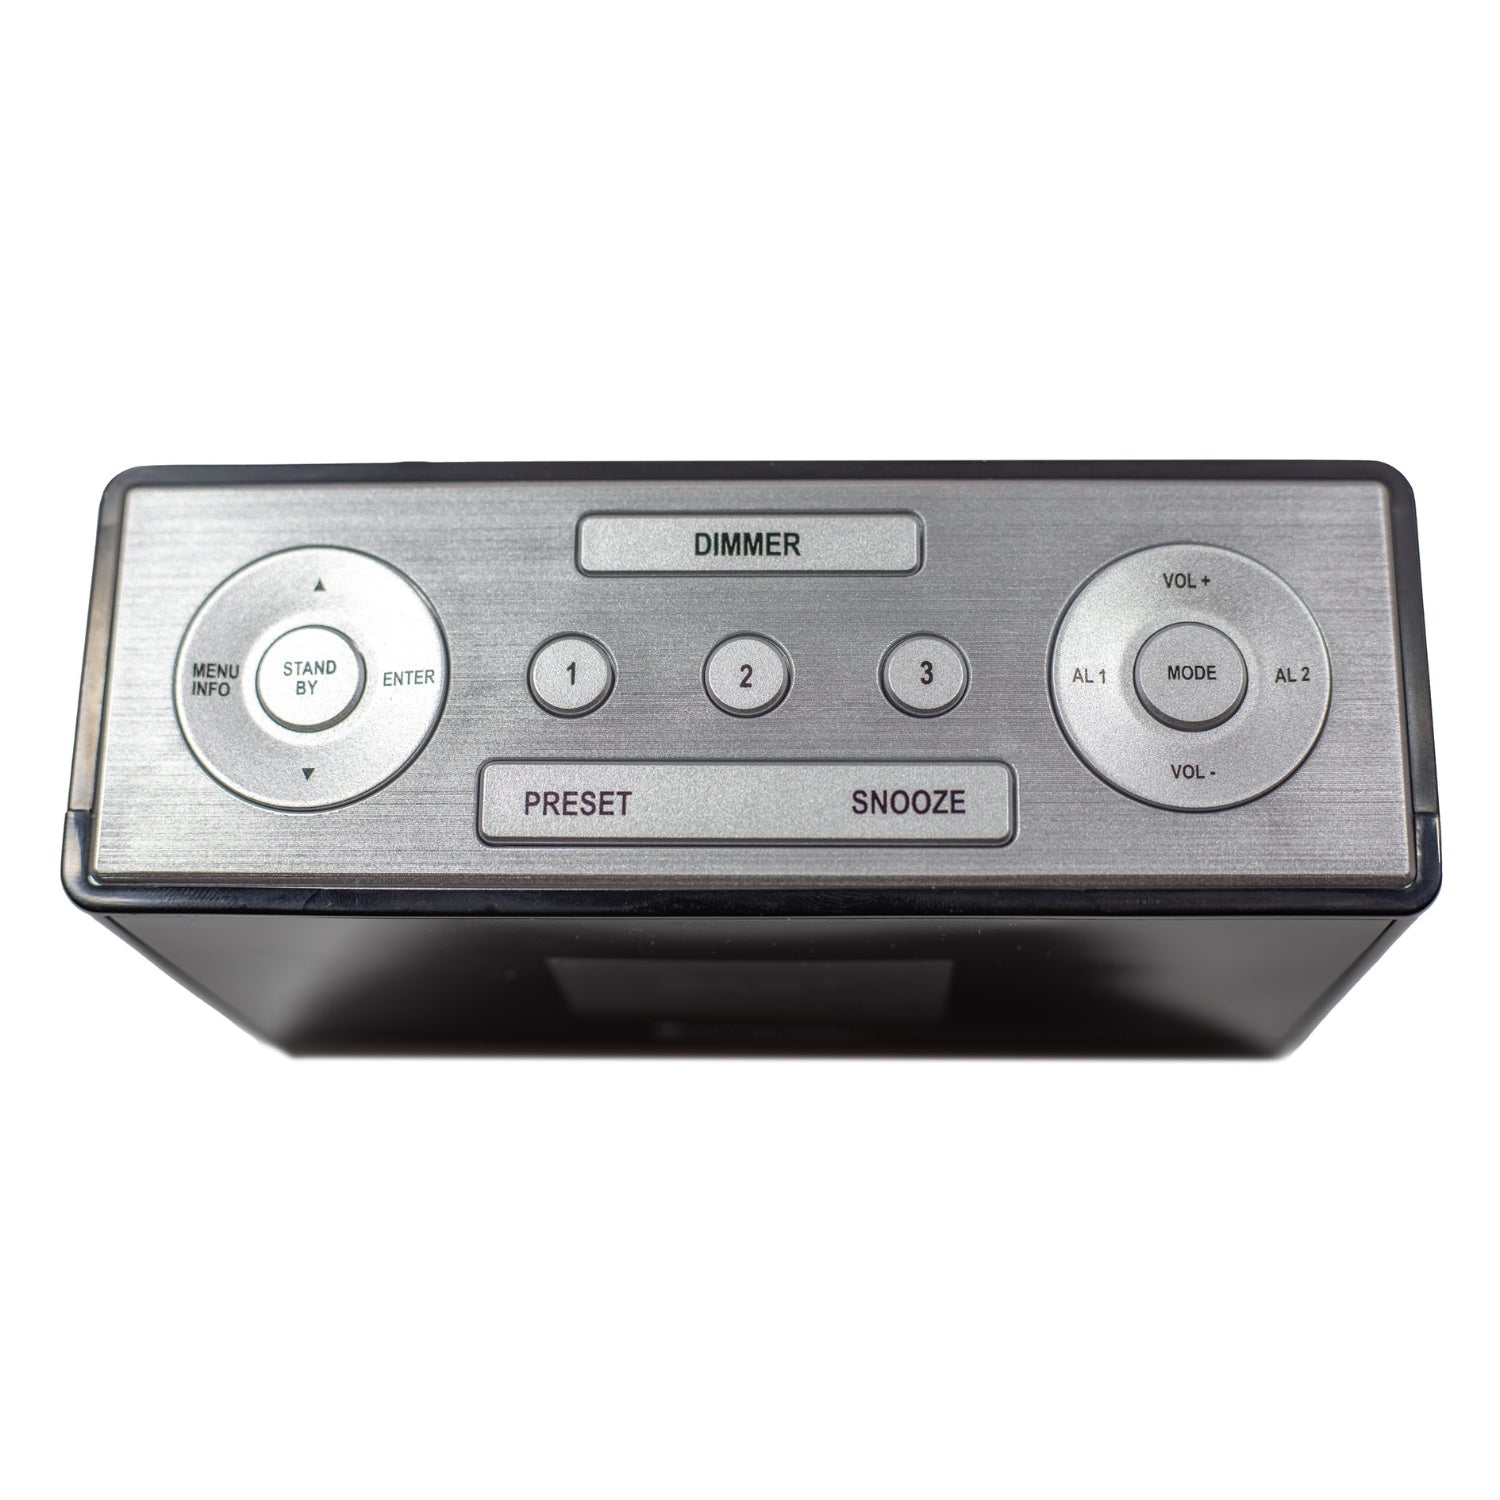 Soundmaster UR240SW DAB + FM digital radio radio alarm clock color display dual alarm wake-up via radio sleep timer